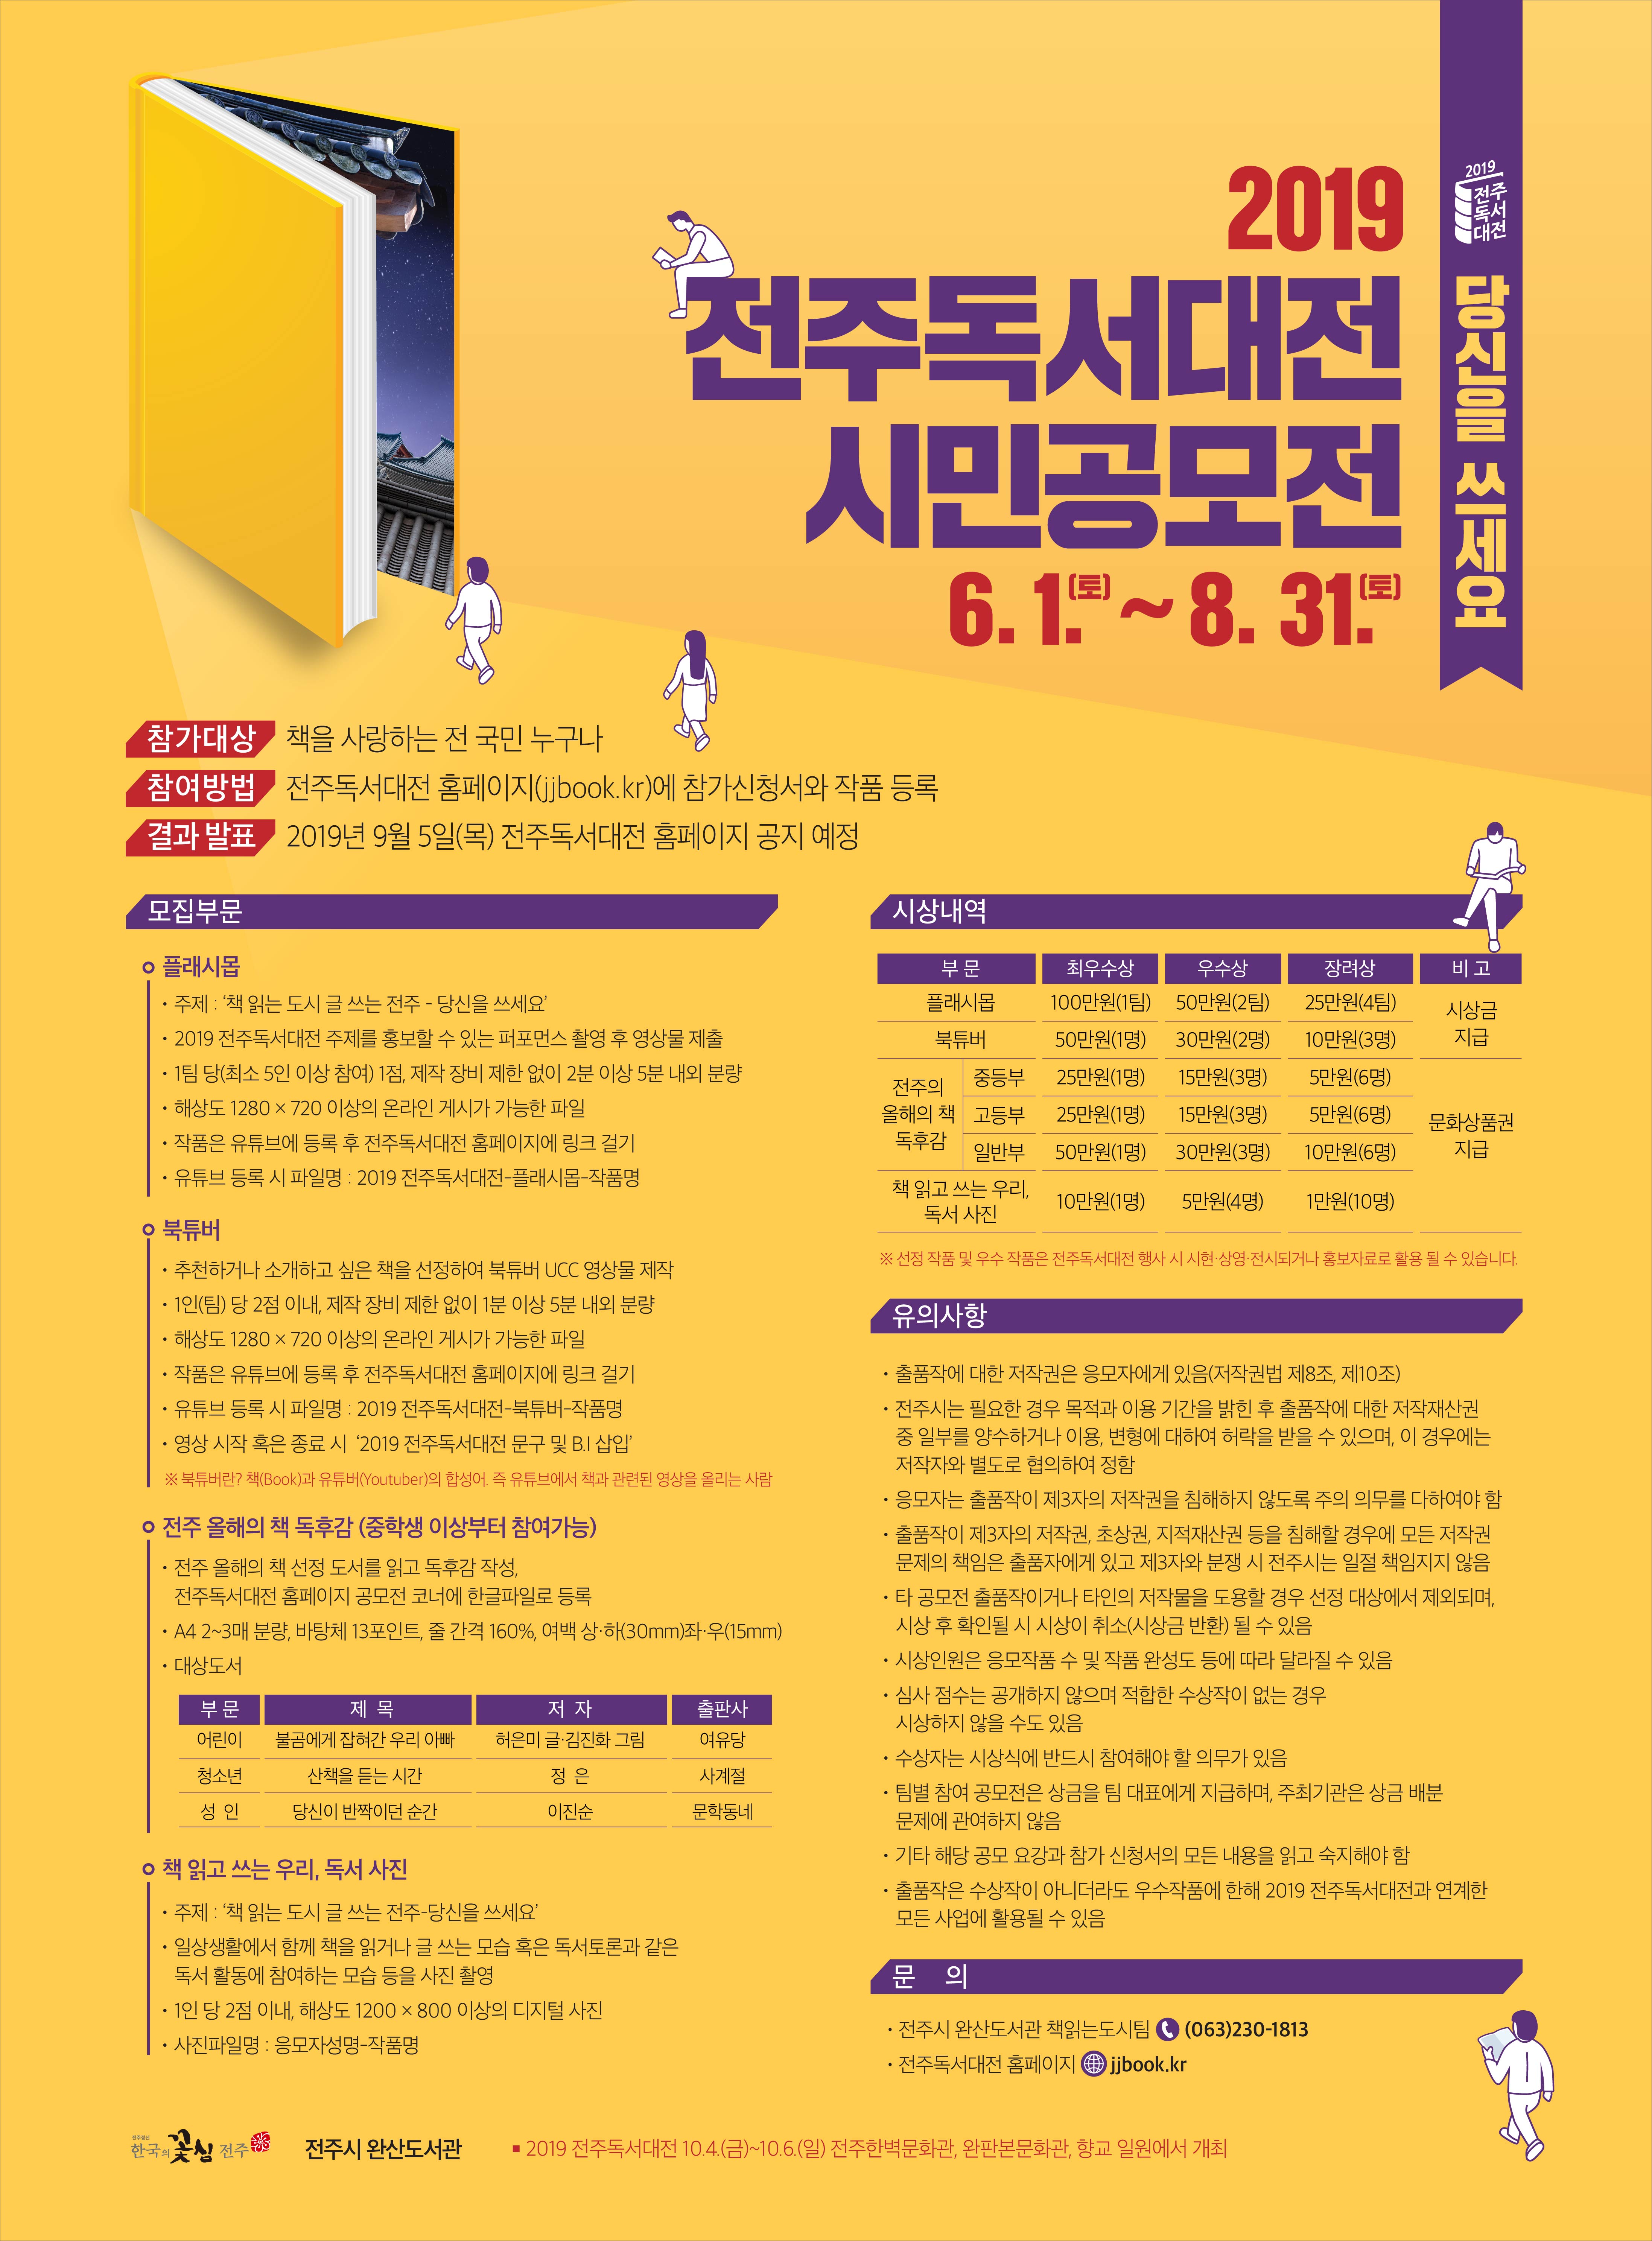  2019 전주독서대전 시민공모전 포스터.jpg